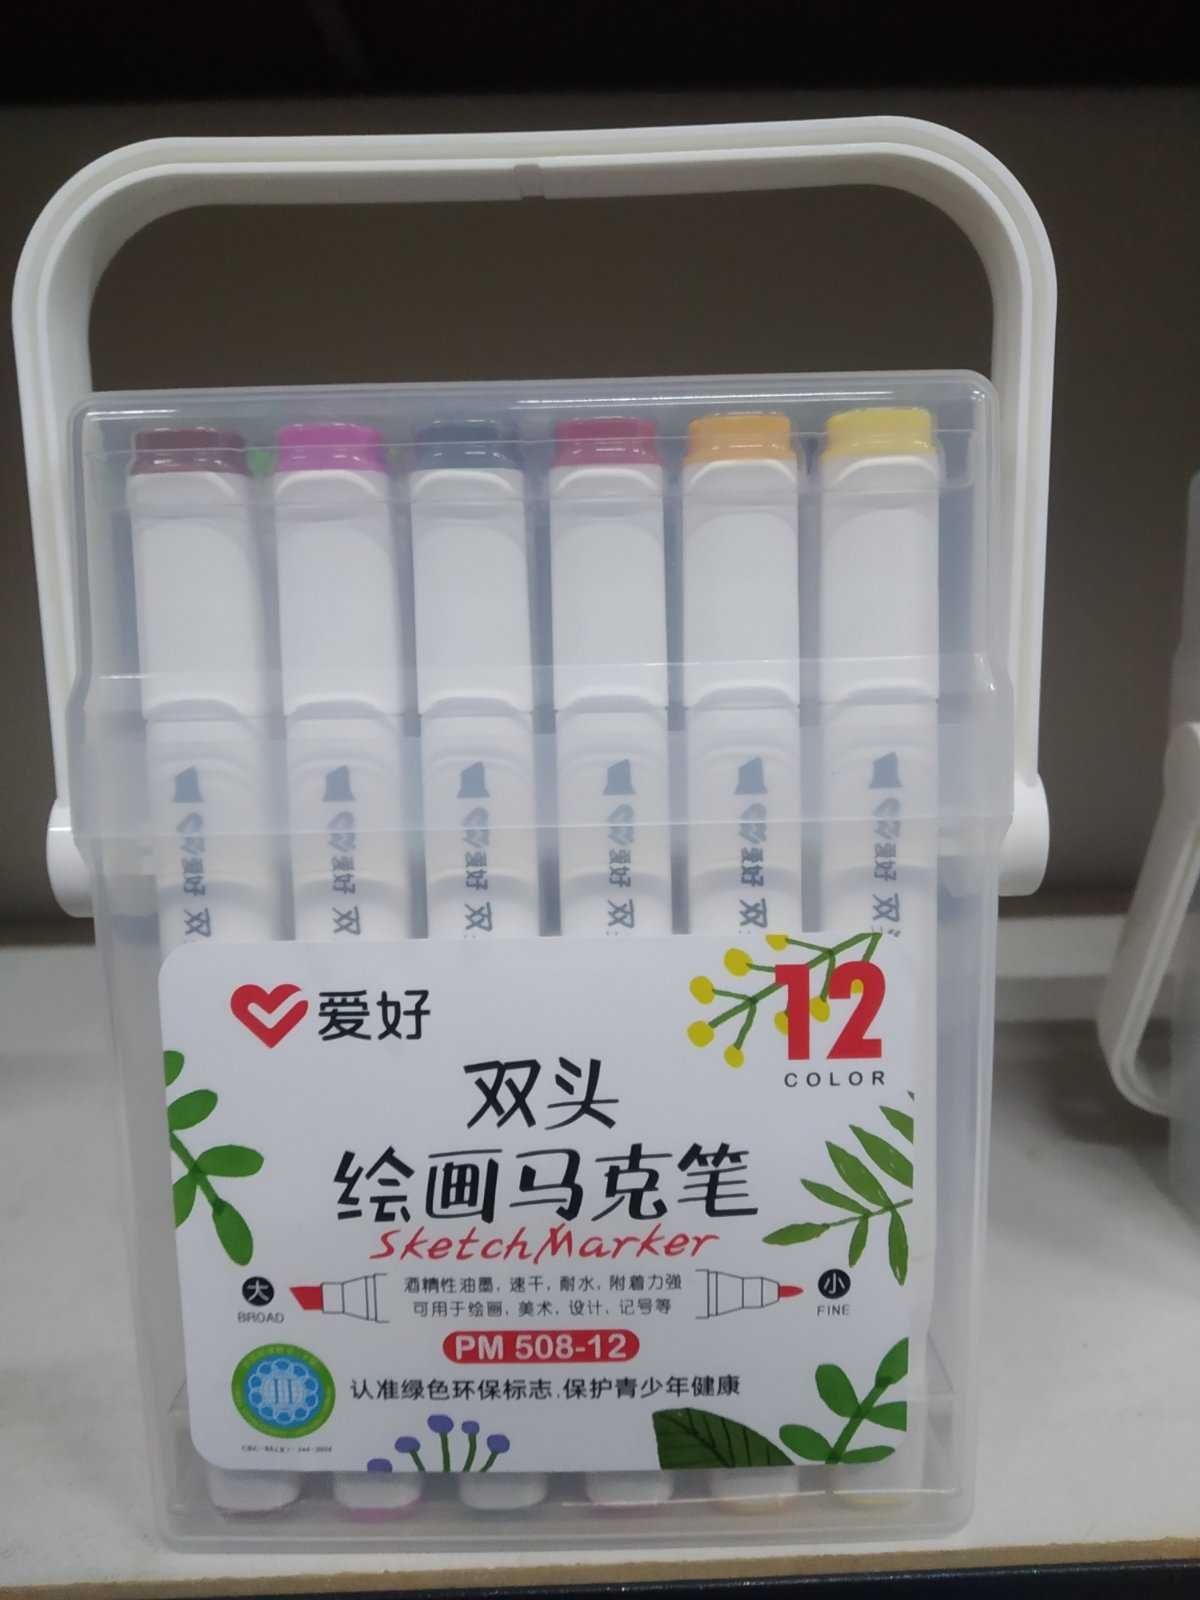 Набір скетч маркерів Aihao 12,18,24,36,48,60 кольорів для малювання